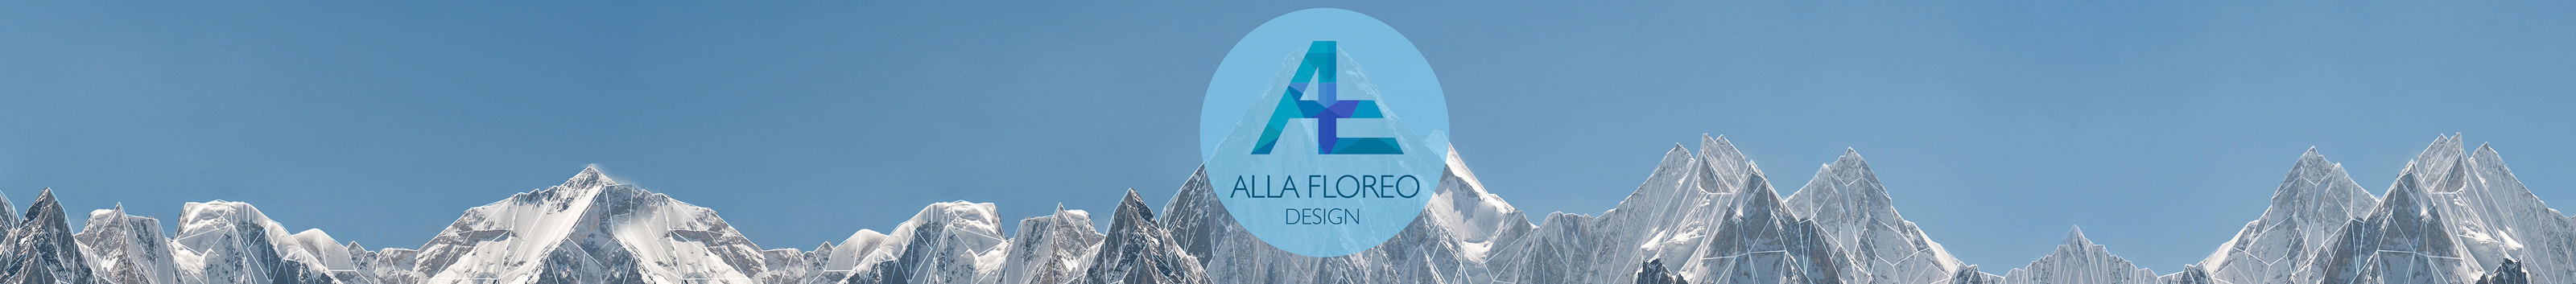 Bannière de profil de Alla Floreo